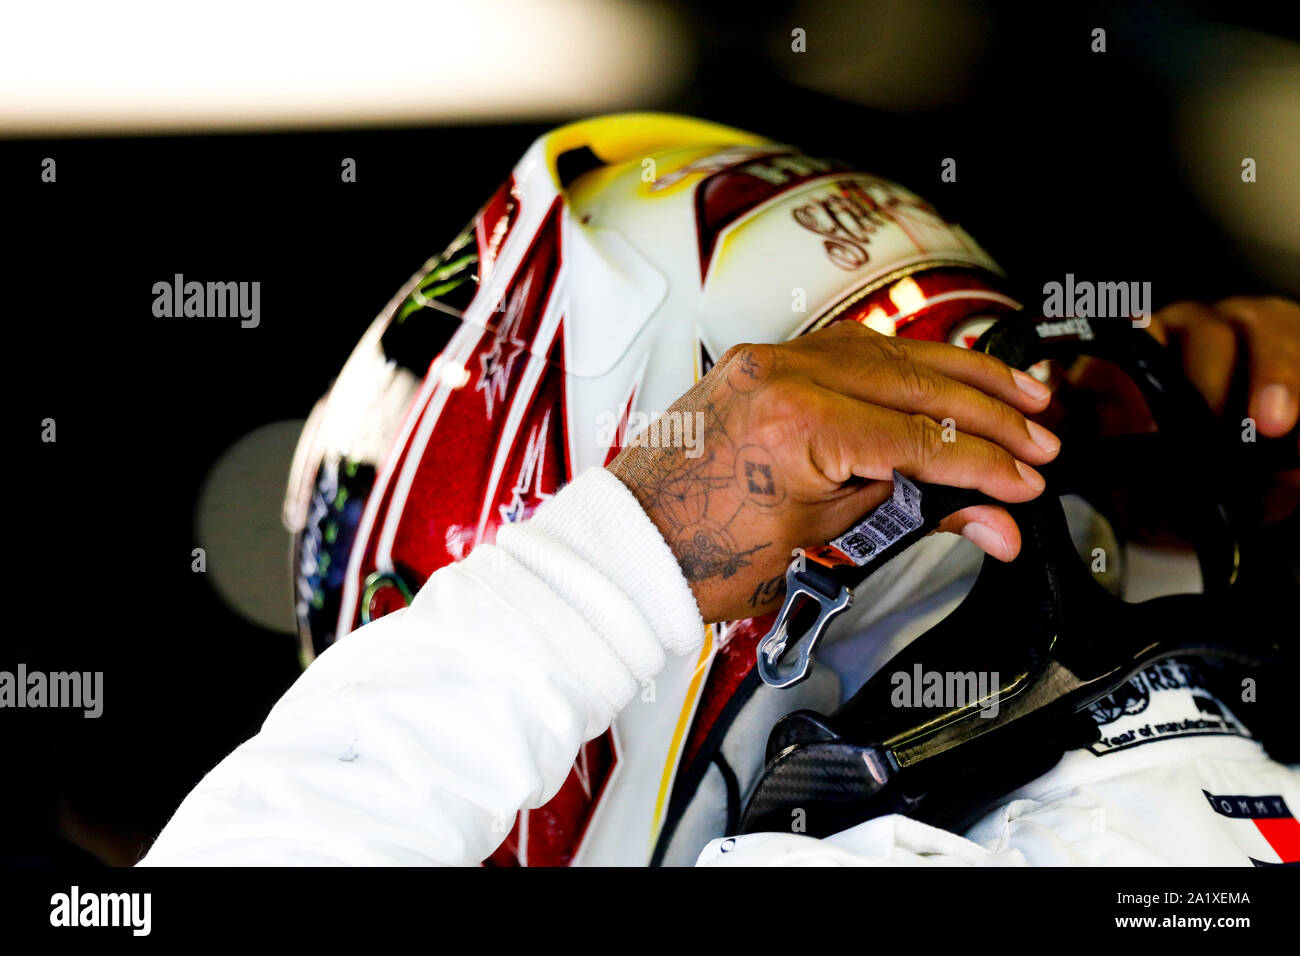 LEWIS HAMILTON de Mercedes AMG Petronas Motorsport à la Formule 1 Grand Prix d'Italie à Monza, Circuit d'Eni à Monza, Italie. Banque D'Images